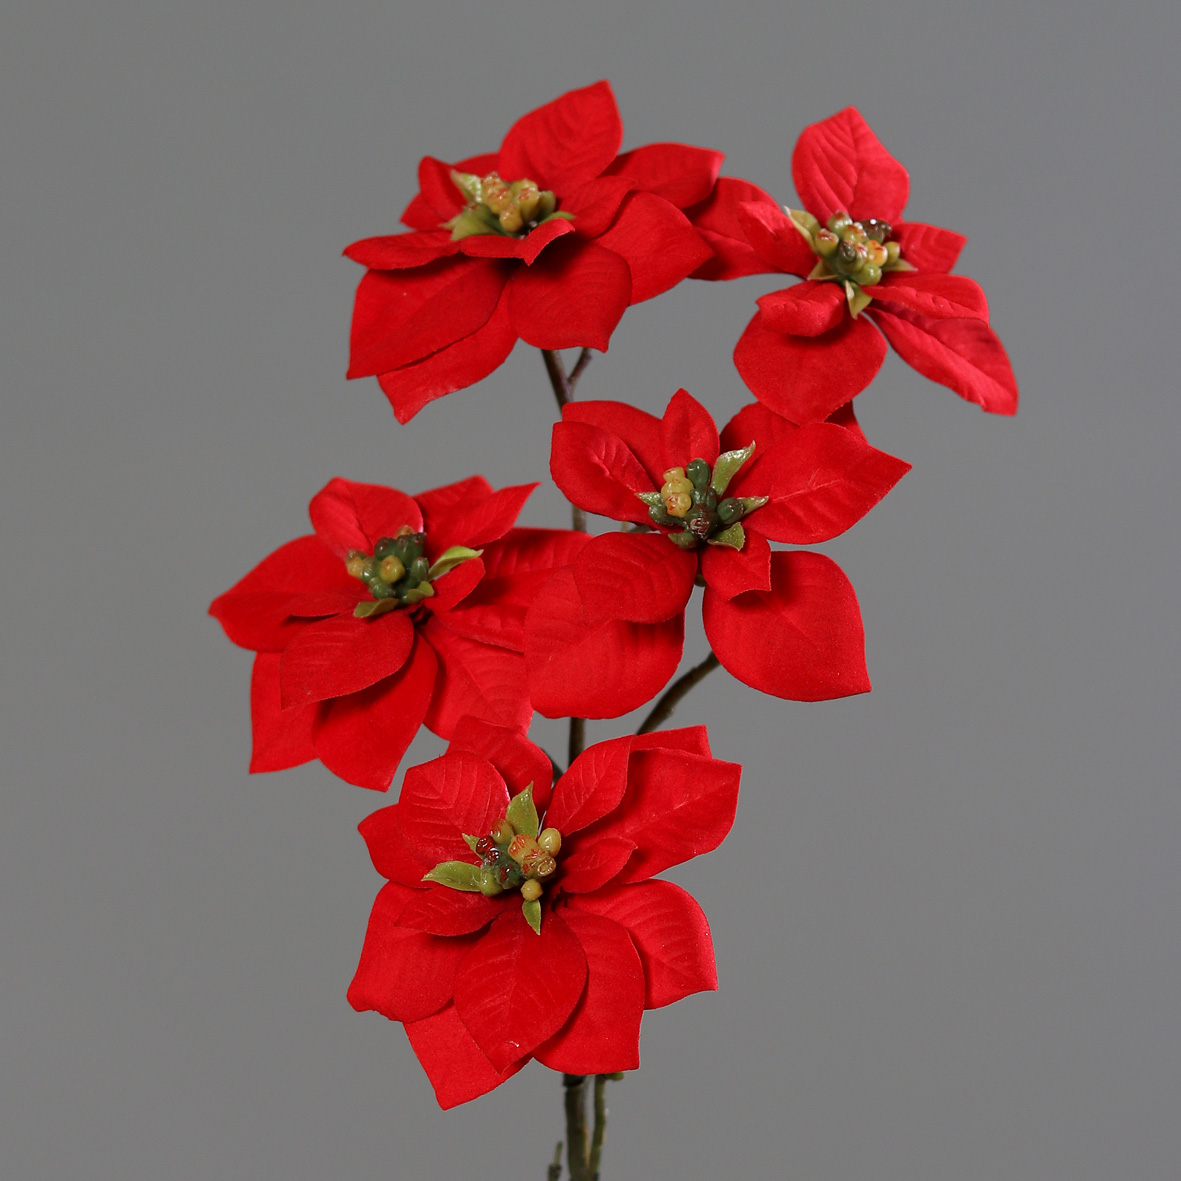 DPI GMBH - BRÜHL Poinsettia mit 5 Blüten 69cm 